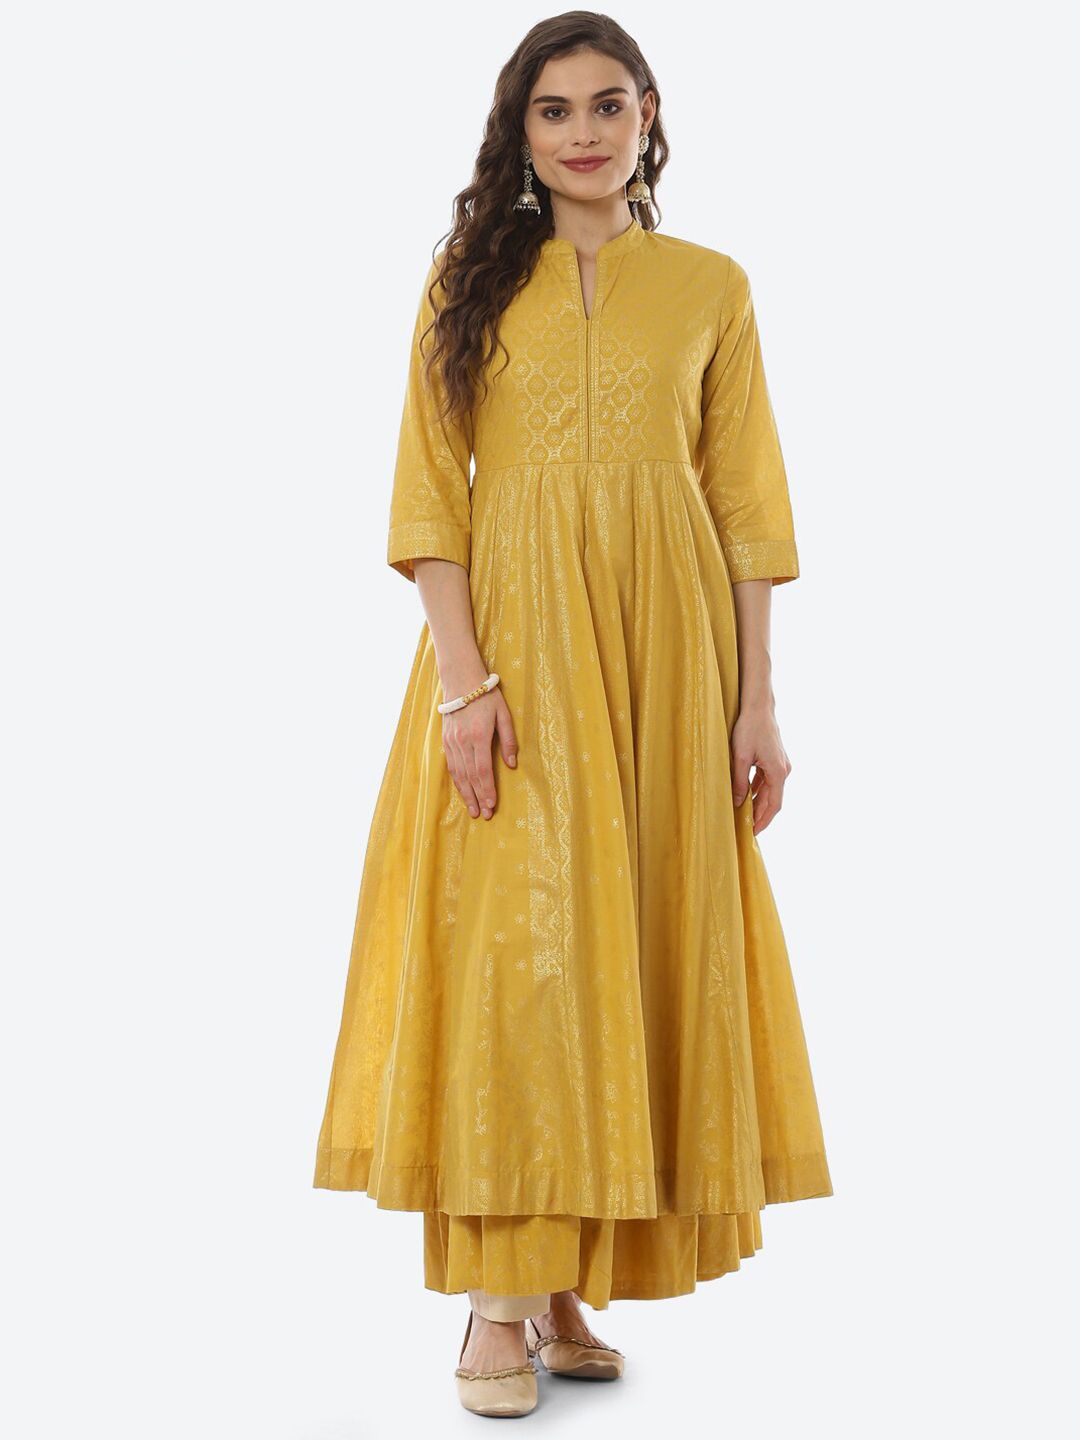 Biba Yellow Ethnic Maxi Dress Price in India